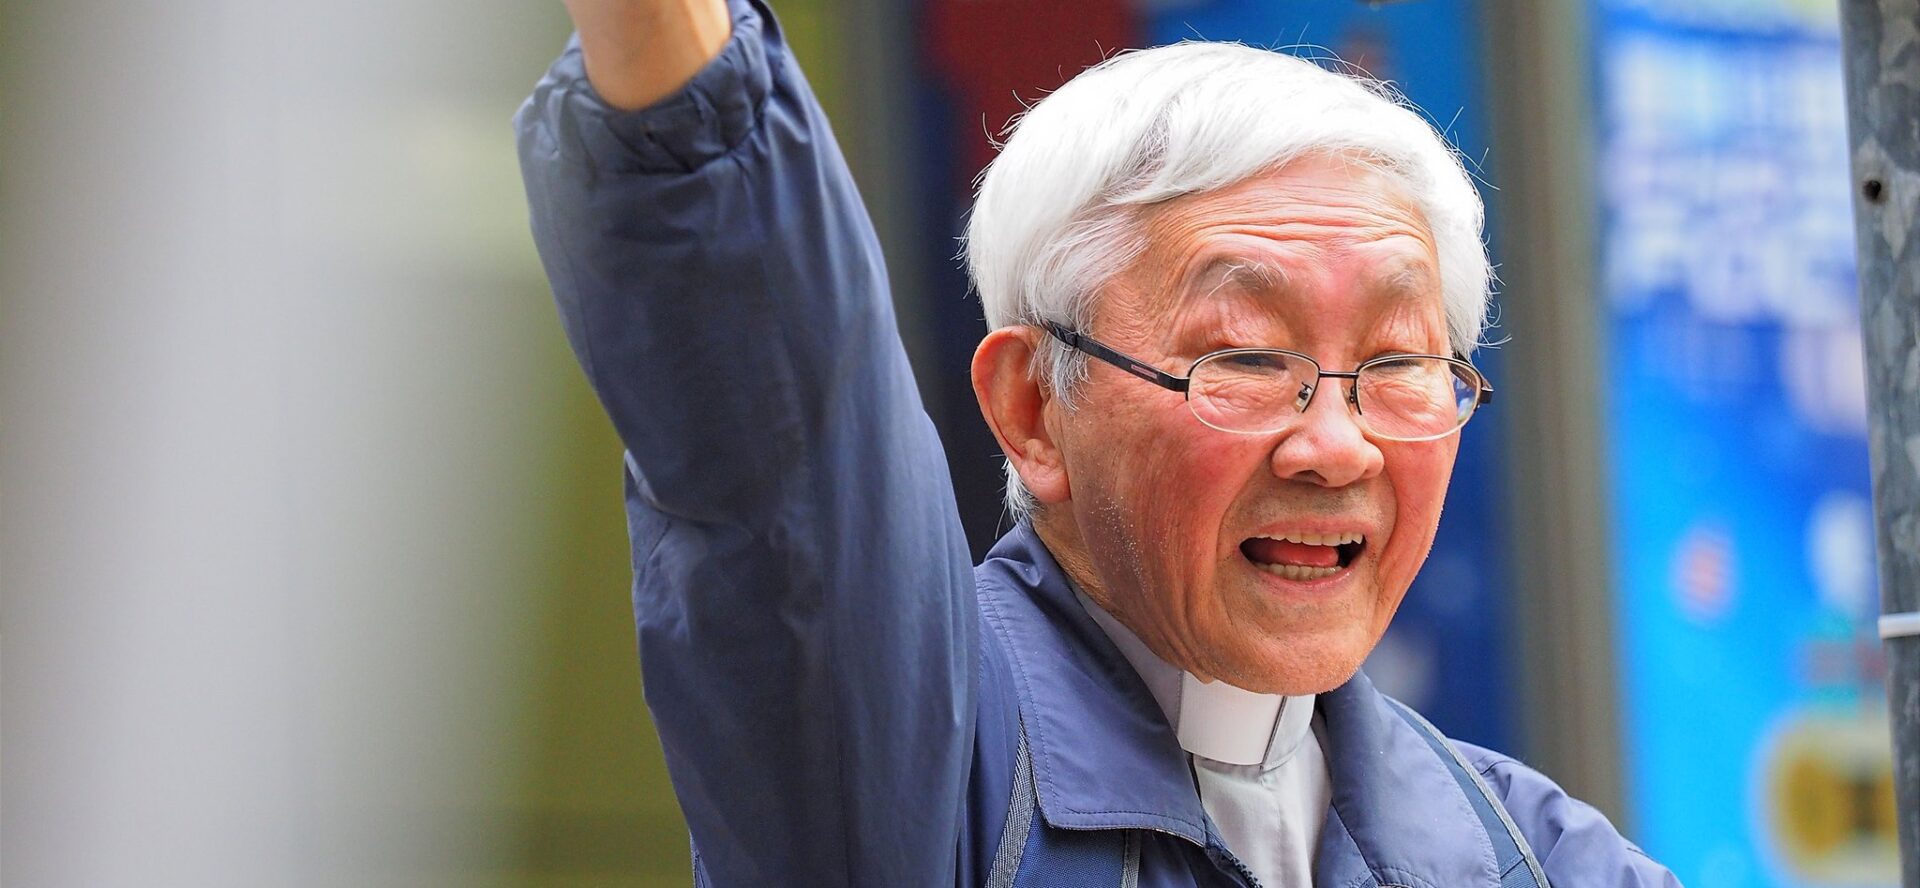 Le soutien du cardinal Zen aux manifestants pro-démocratie lui vaut des soucis avec la justice de Hong Kong | © Etan Liam/Flickr/CC BY-ND 2.0